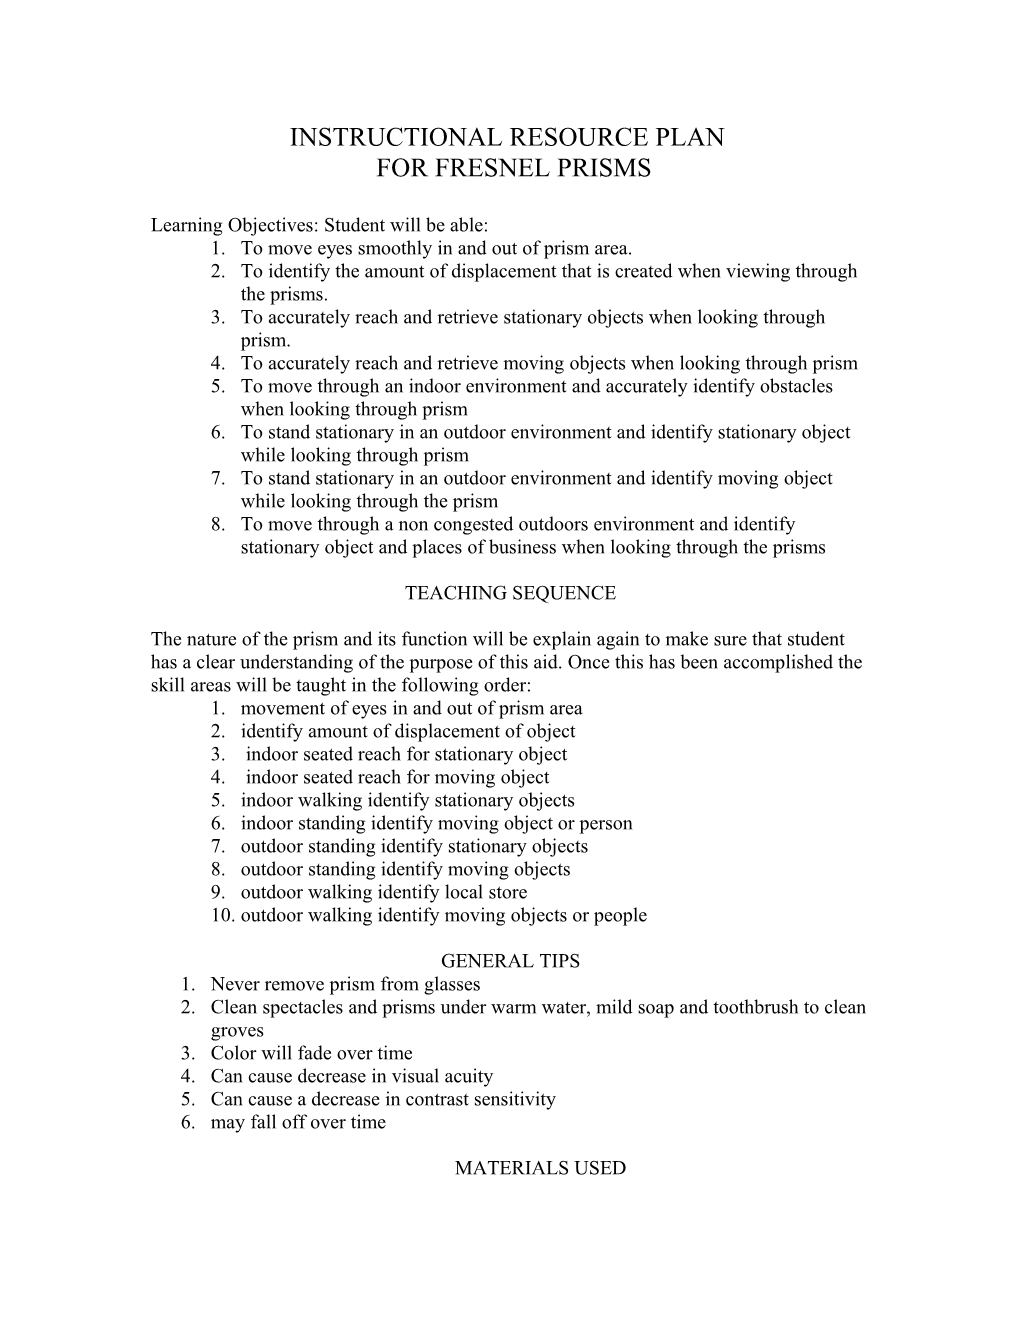 Instructions for Fresnel Prisms